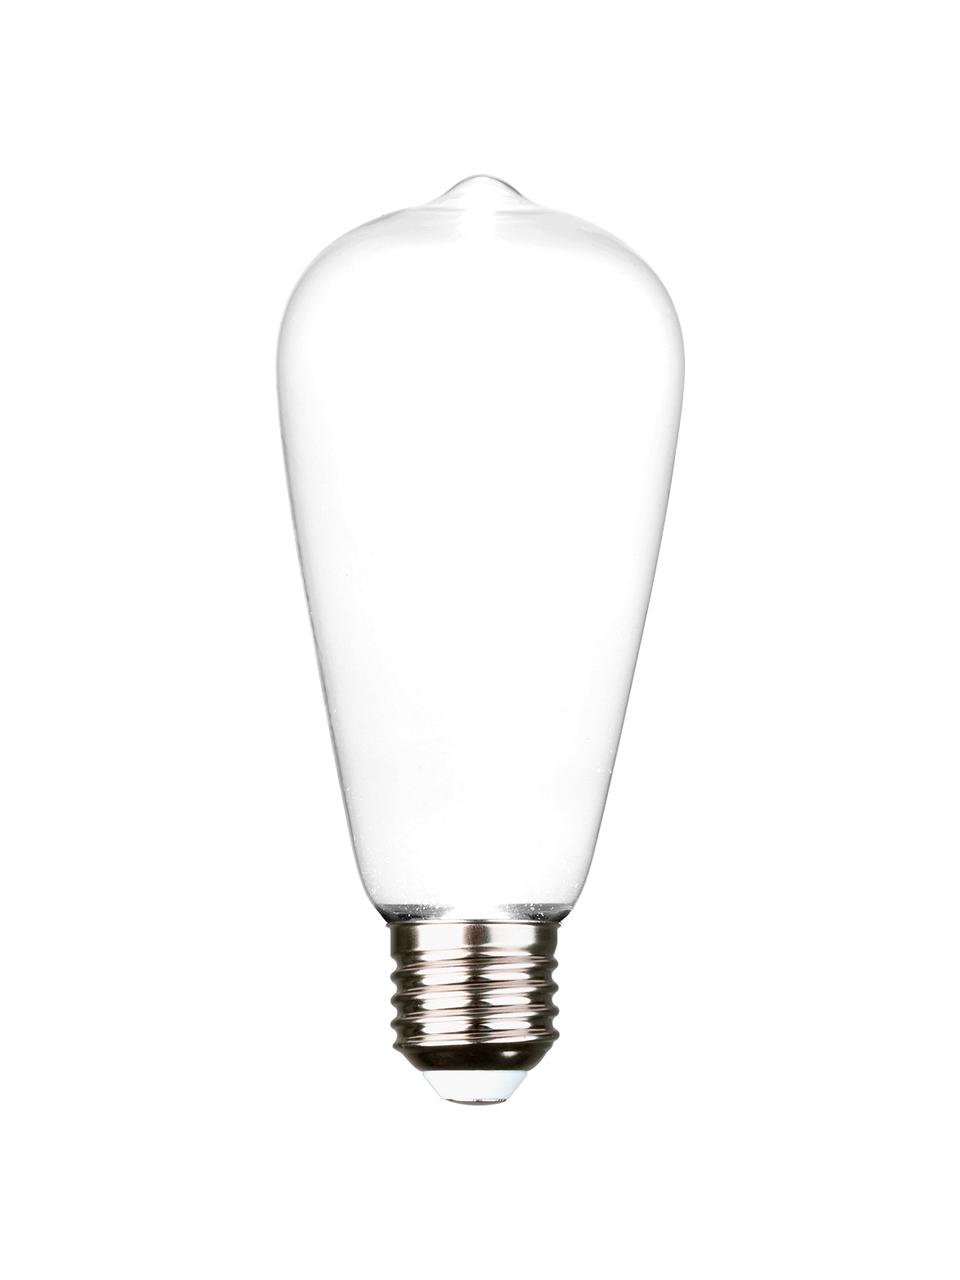 Ampoule (E27 - 250 lm) blanc chaud Ghost, 1 pièce, Blanc, aluminium